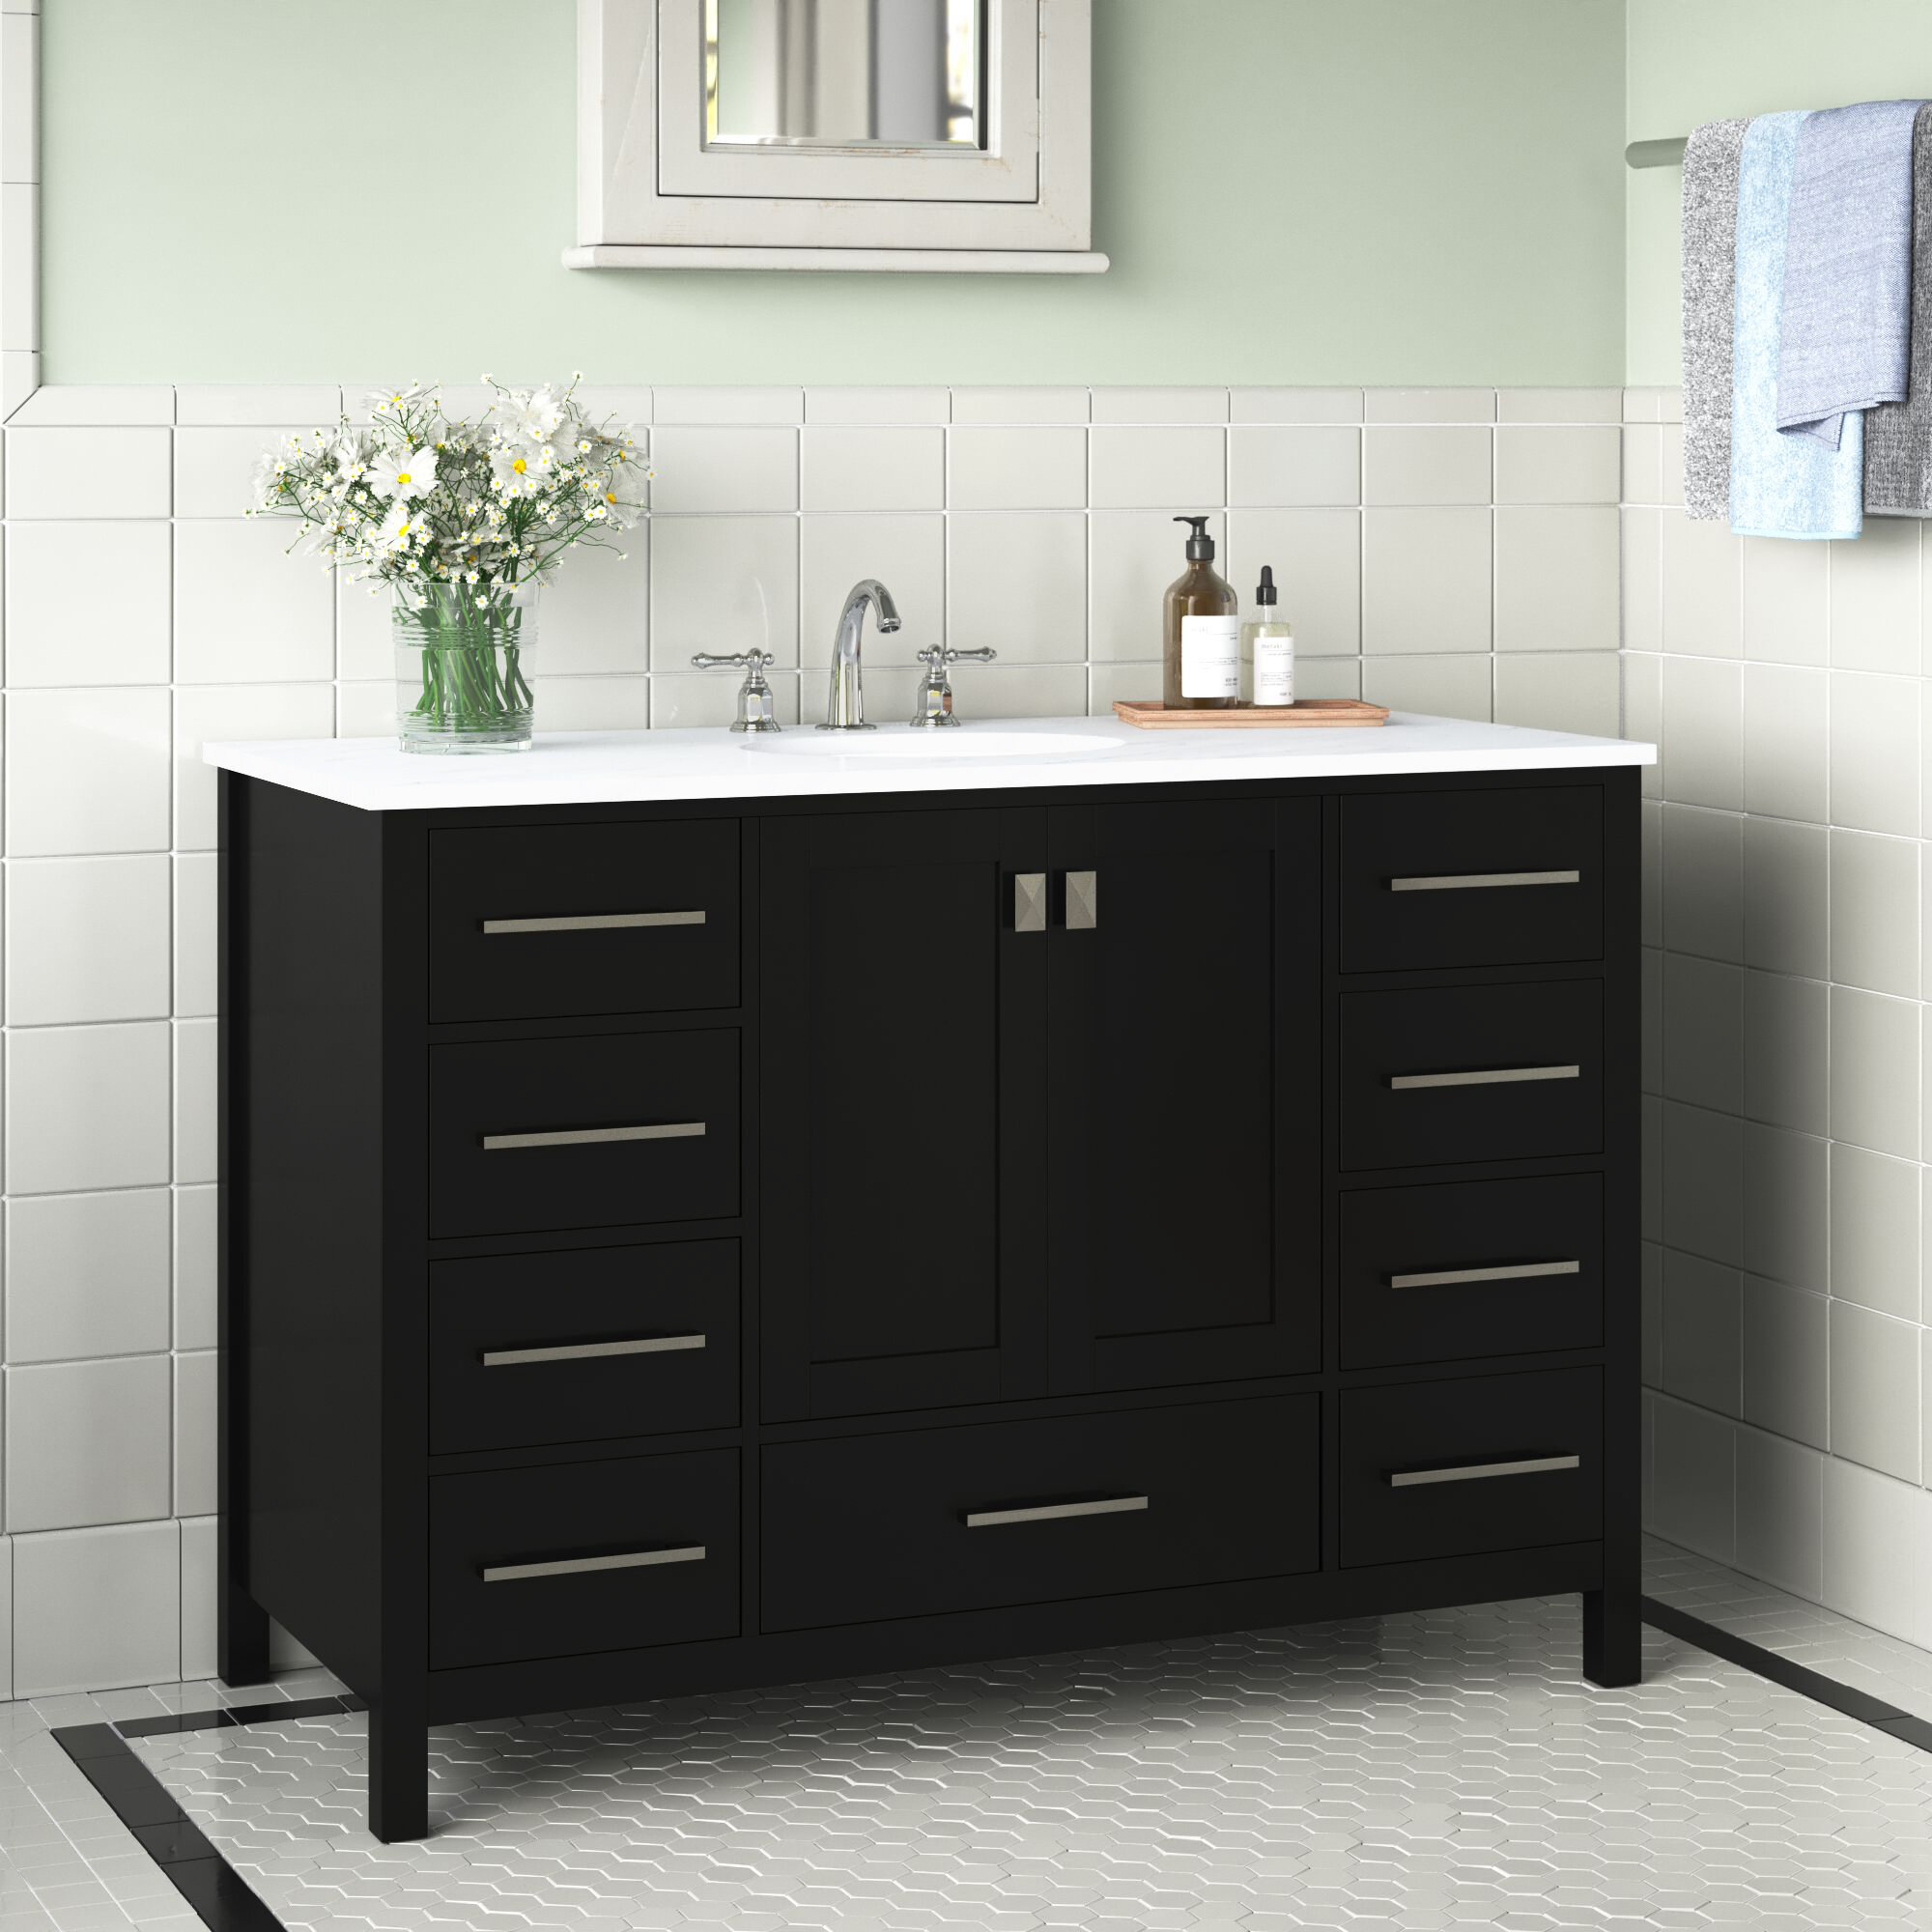 Andover Mills Broadview 48 Single Bathroom Vanity Set Reviews Wayfair